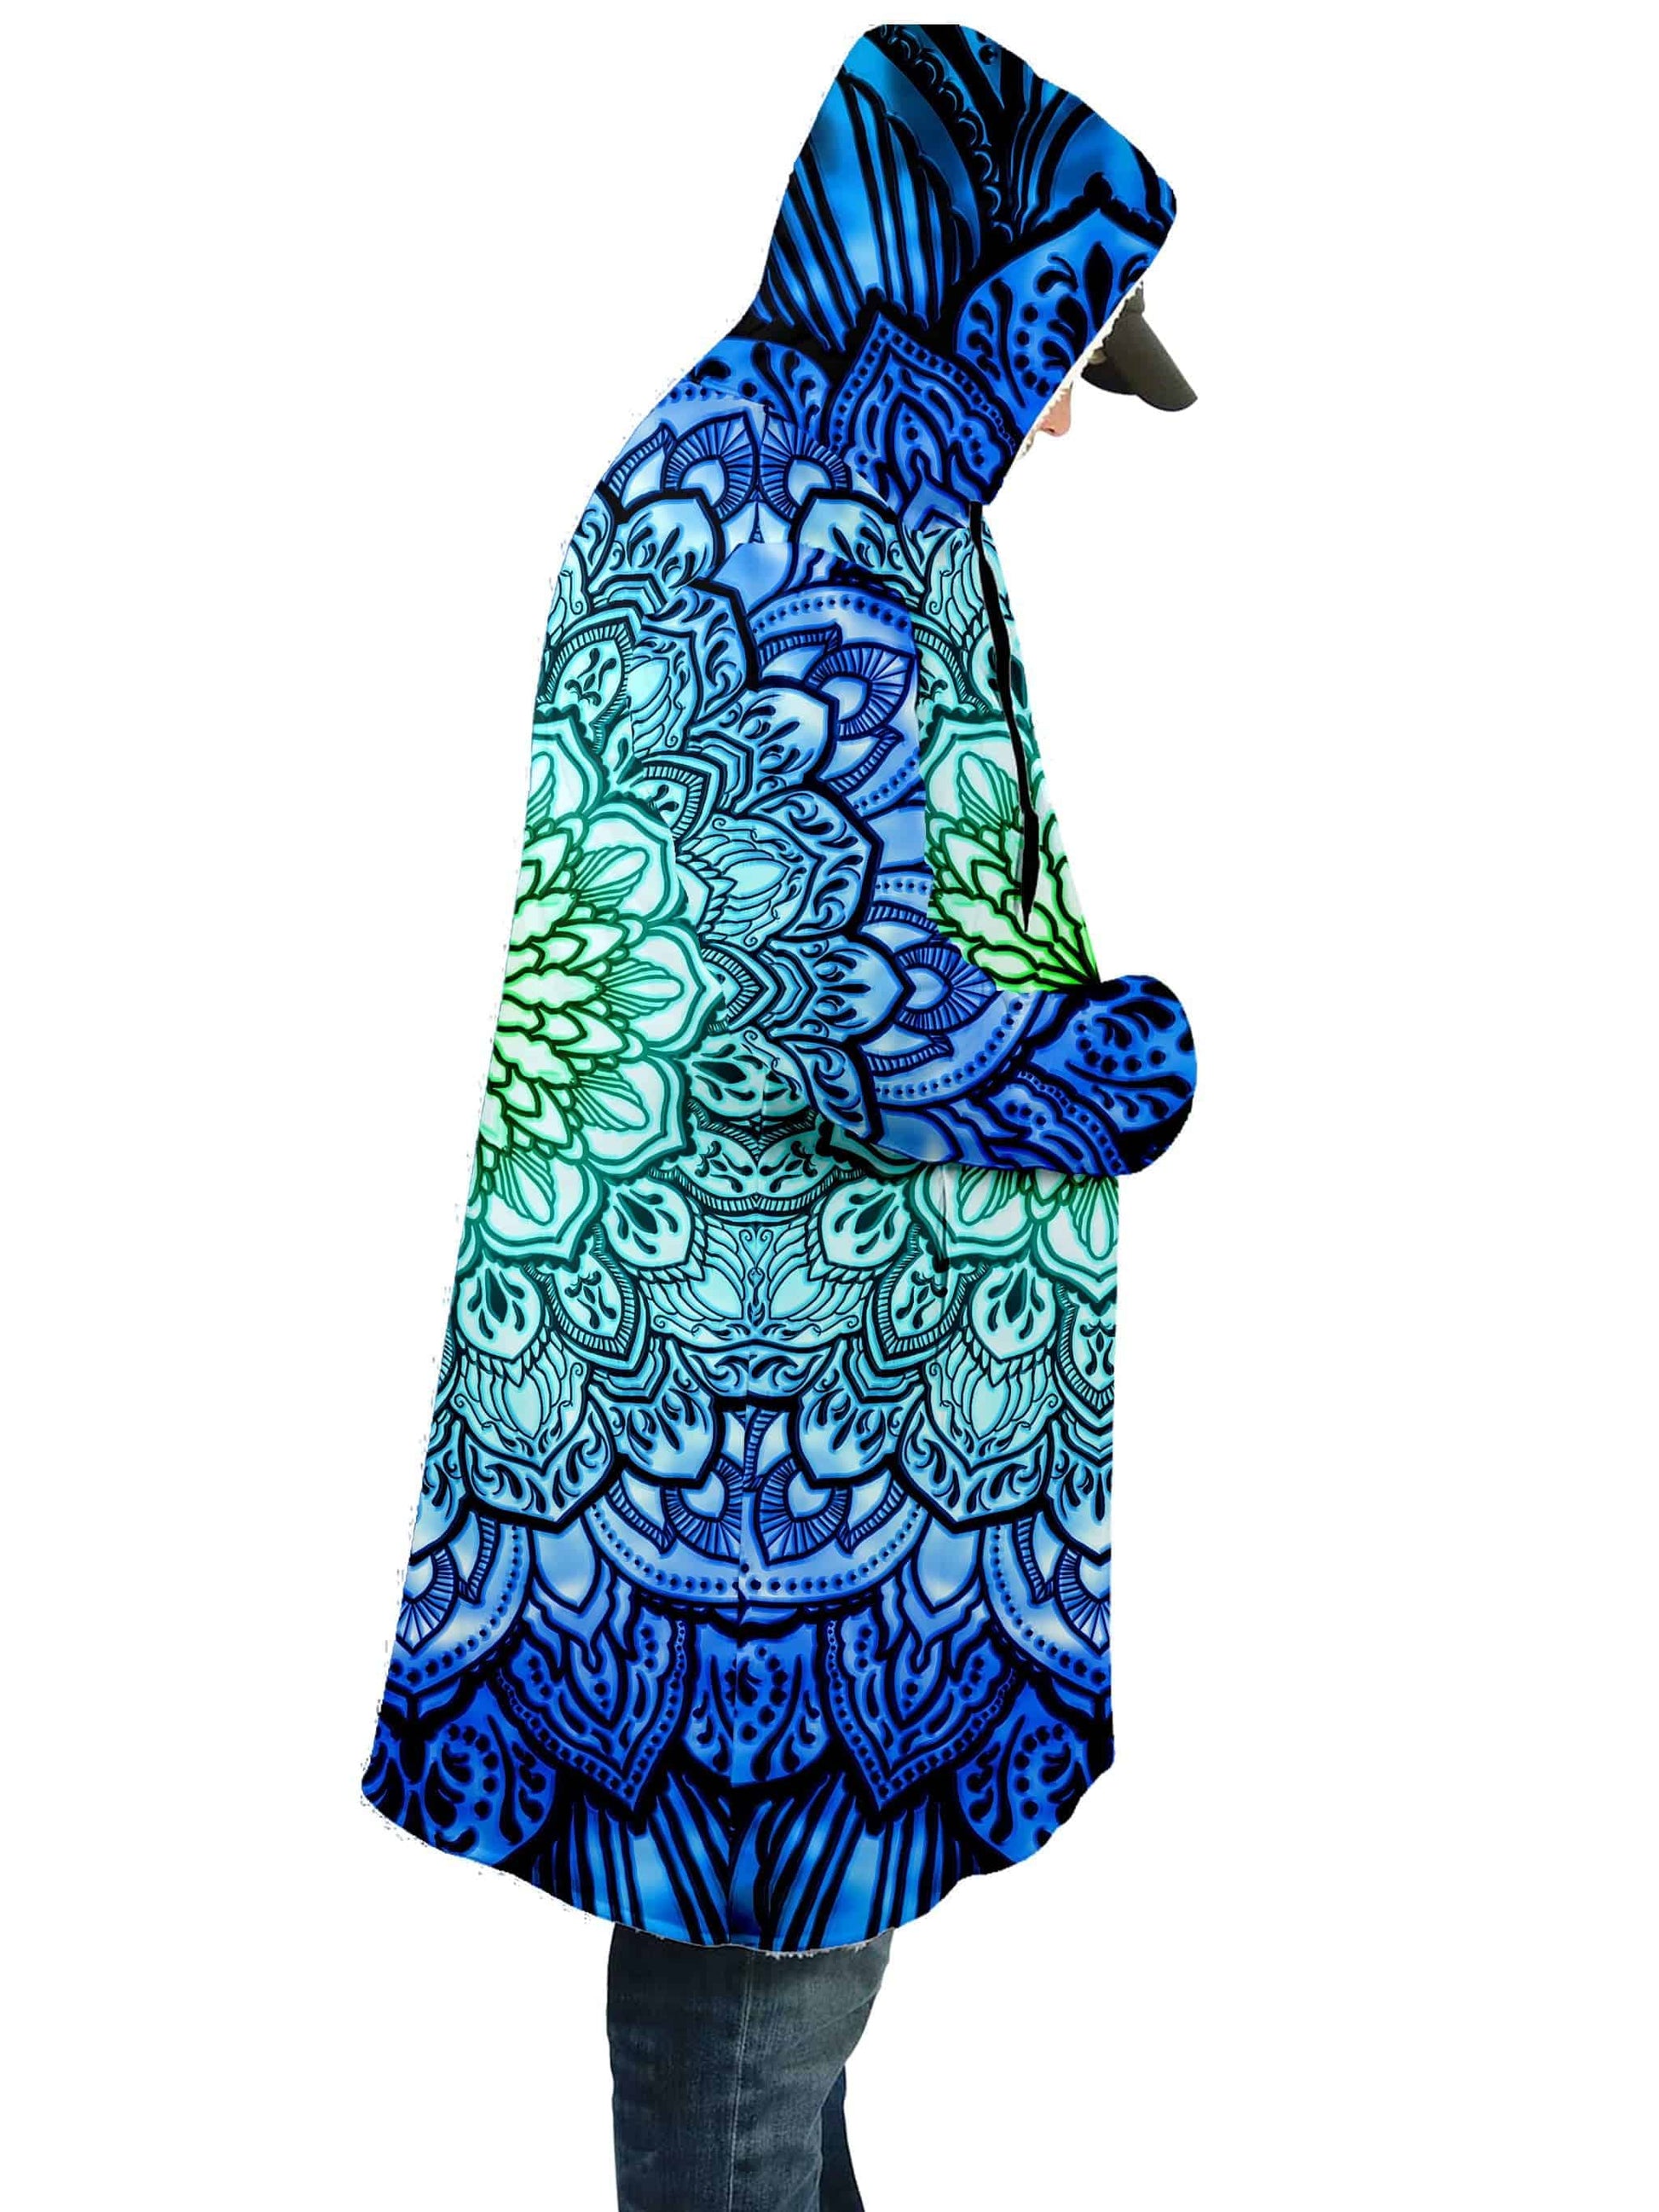 Ornate Mandala Blue Cloak, Yantrart Design, | iEDM